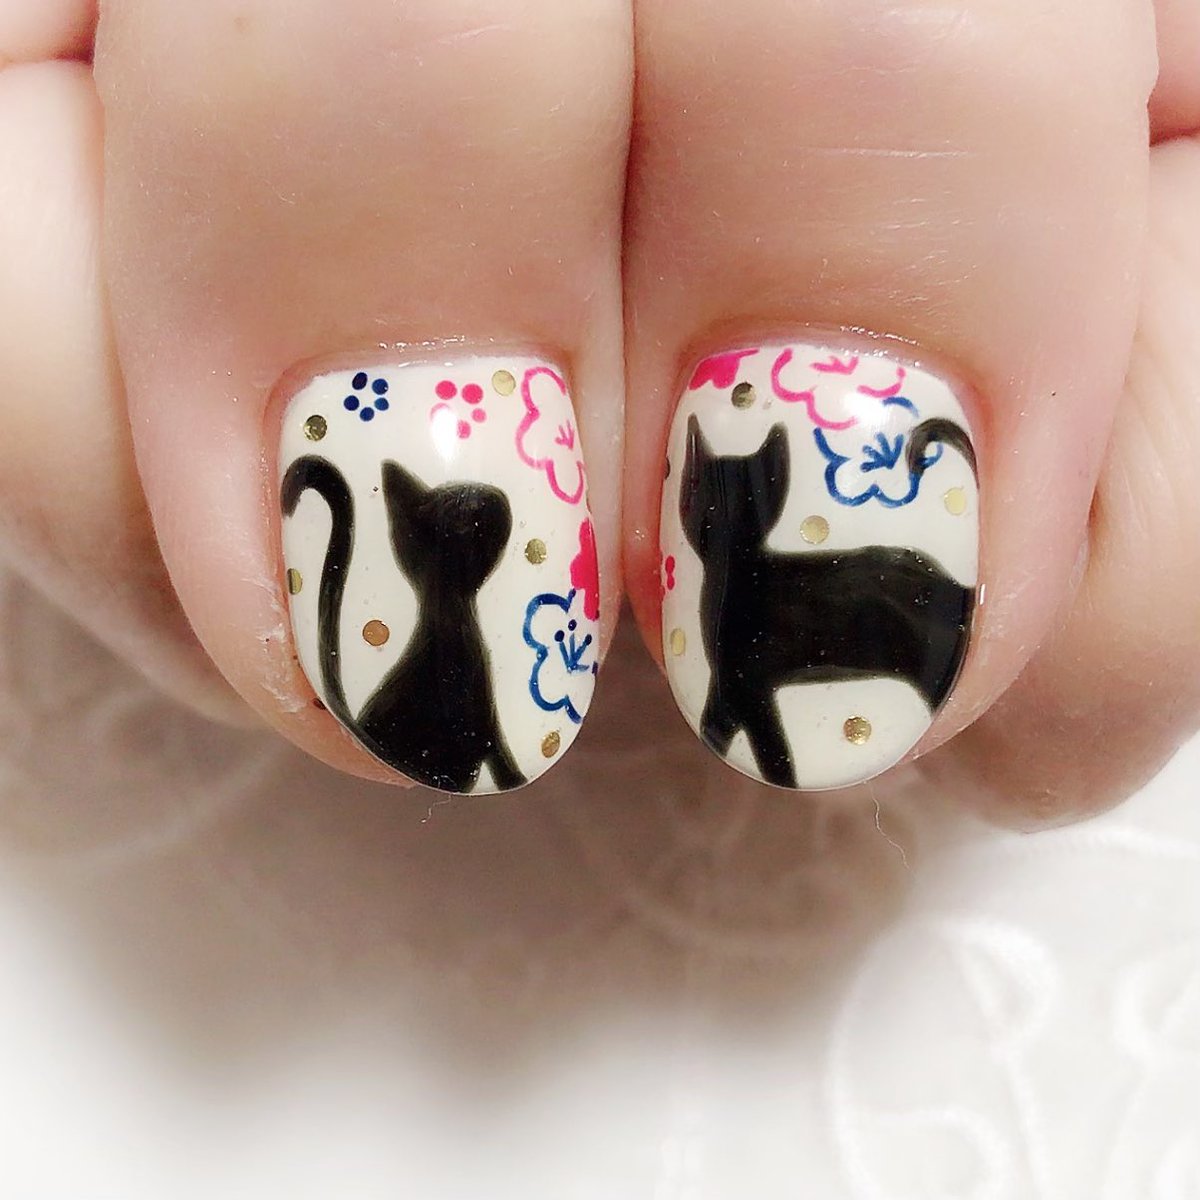 ぴなネイル🐣お客さまネイル💛

猫さんがお好きな方なので、
年越しっぽく梅のお花と猫さん🐱描いてみました♪

和の文化好き(´๑•🔸•๑｀)♡

#年越しネイル
#手描きアート
#手描きイラスト
#ネコネイル 
#黒ネコ
#nailslove 
#nailart 
#和風ネイル
#和柄ネイル
#japanesenail
#JapaneseCulture